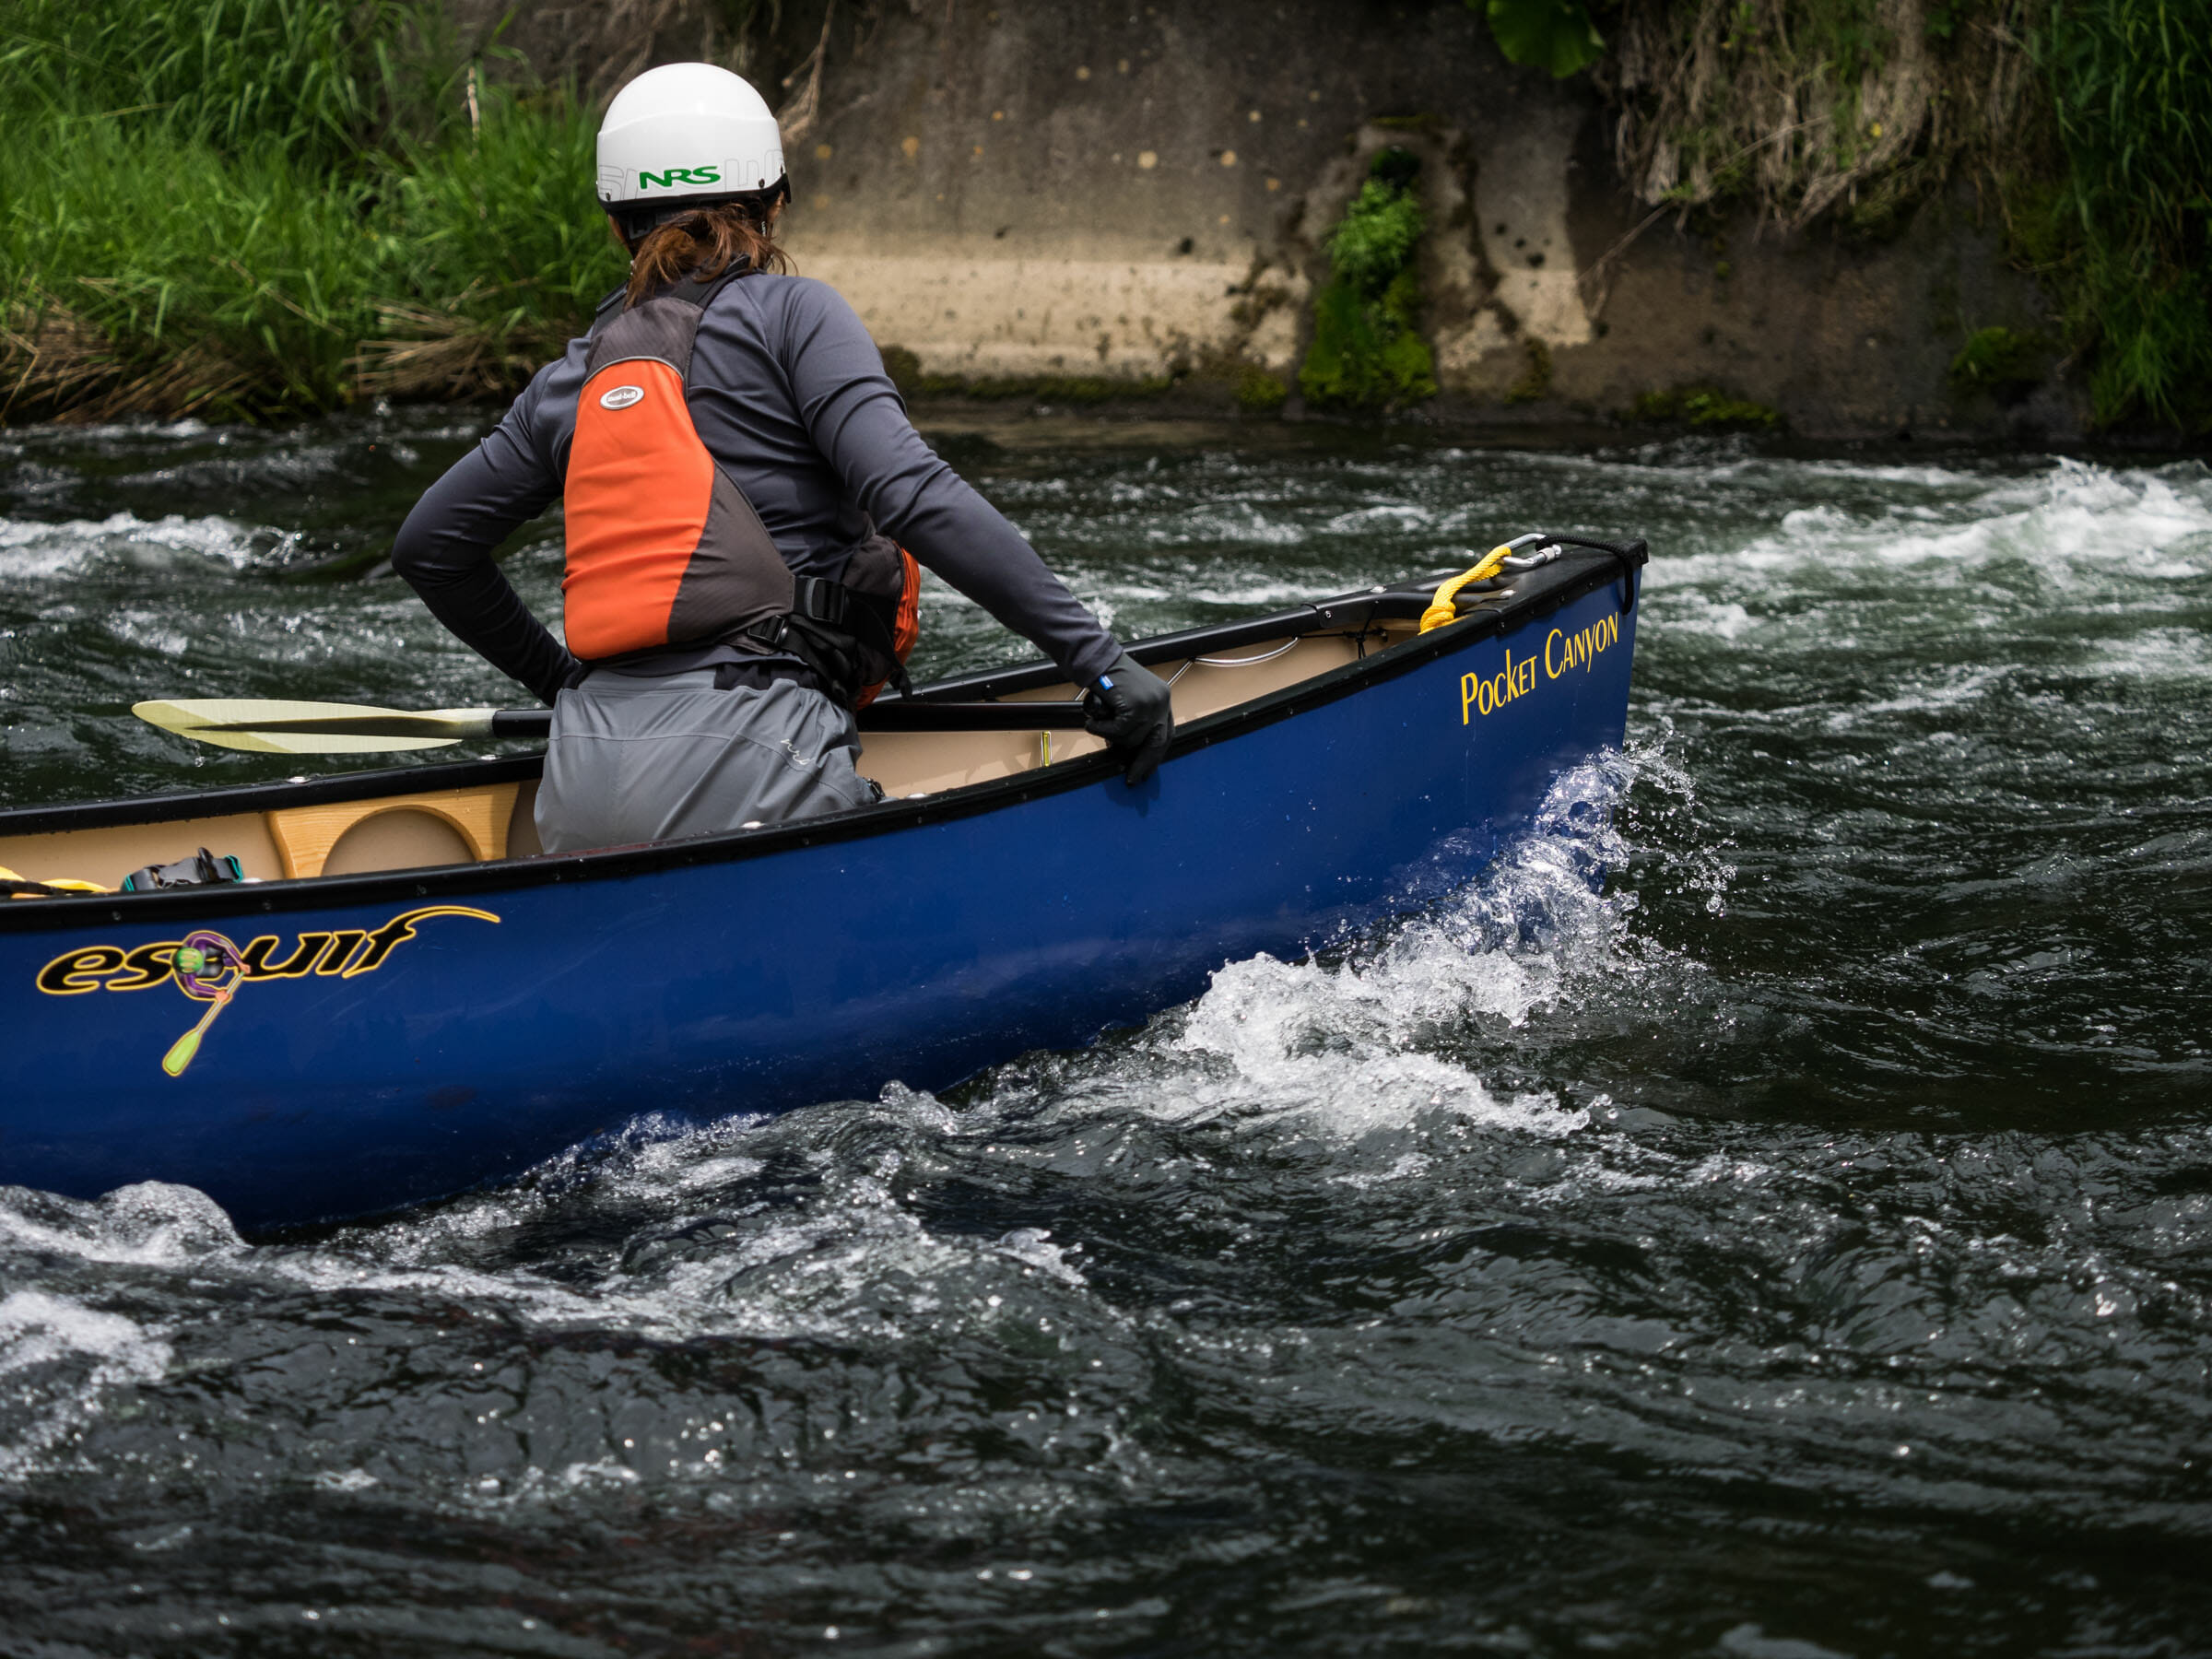 Shiribetsu River Rafting Course in Canadian Canoes (Niseko, Hokk